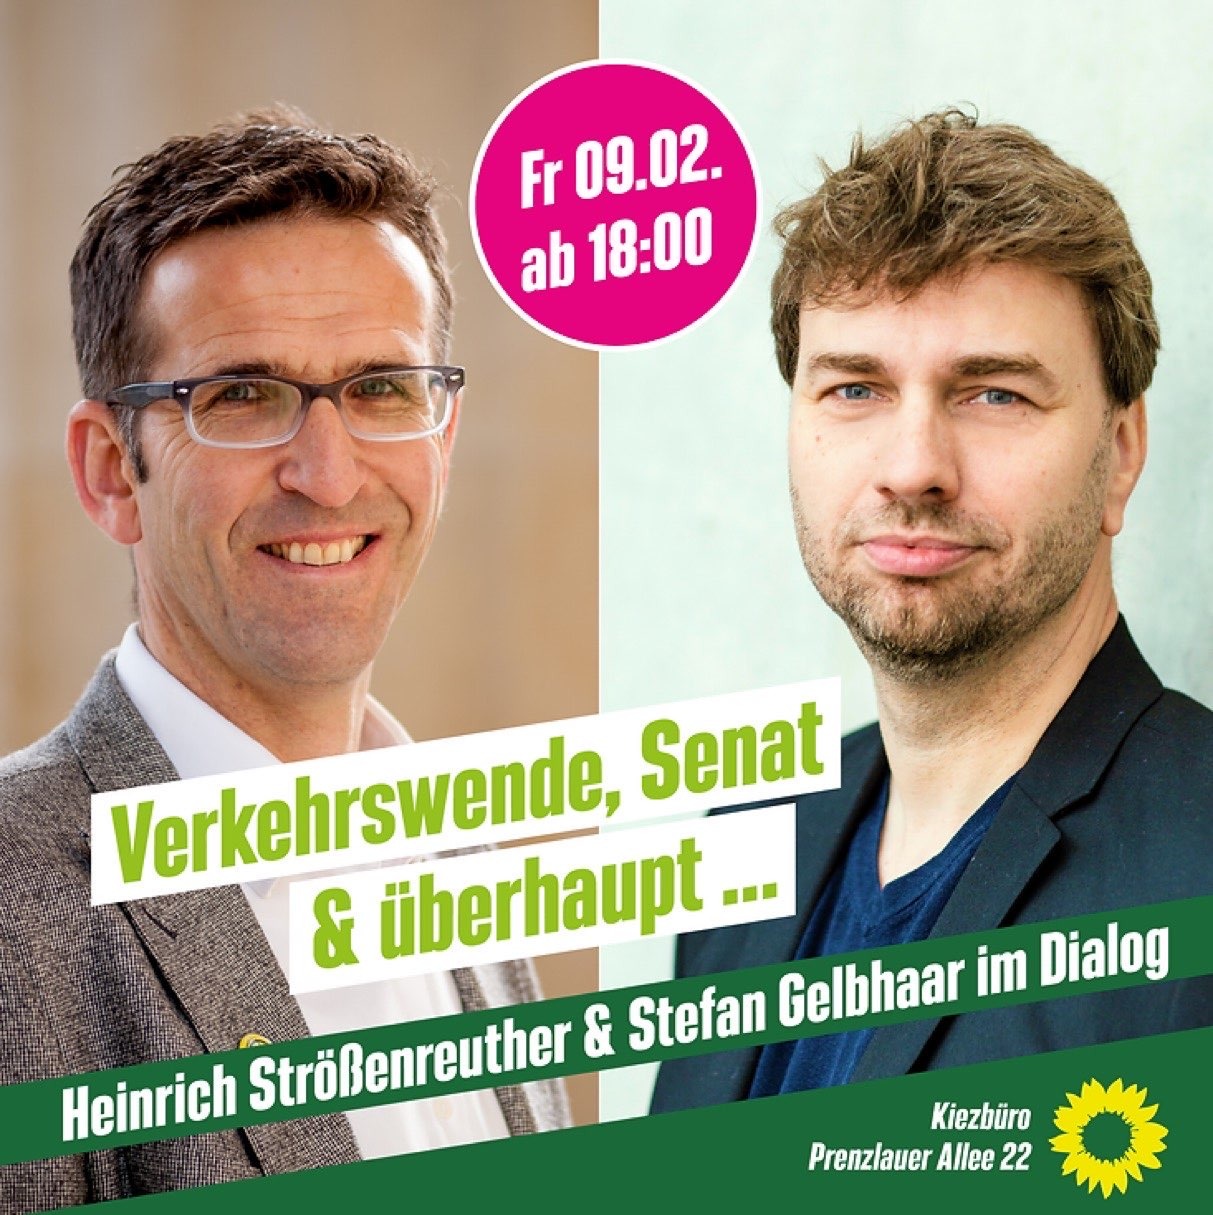 Ein Sharpic zur Veranstaltung: Zwei Porträts nabeneinander, es ssind Heinrich Strößenreuther und Stefan Gelbhaar. Dazu die Veranstaltungs-Informationen.